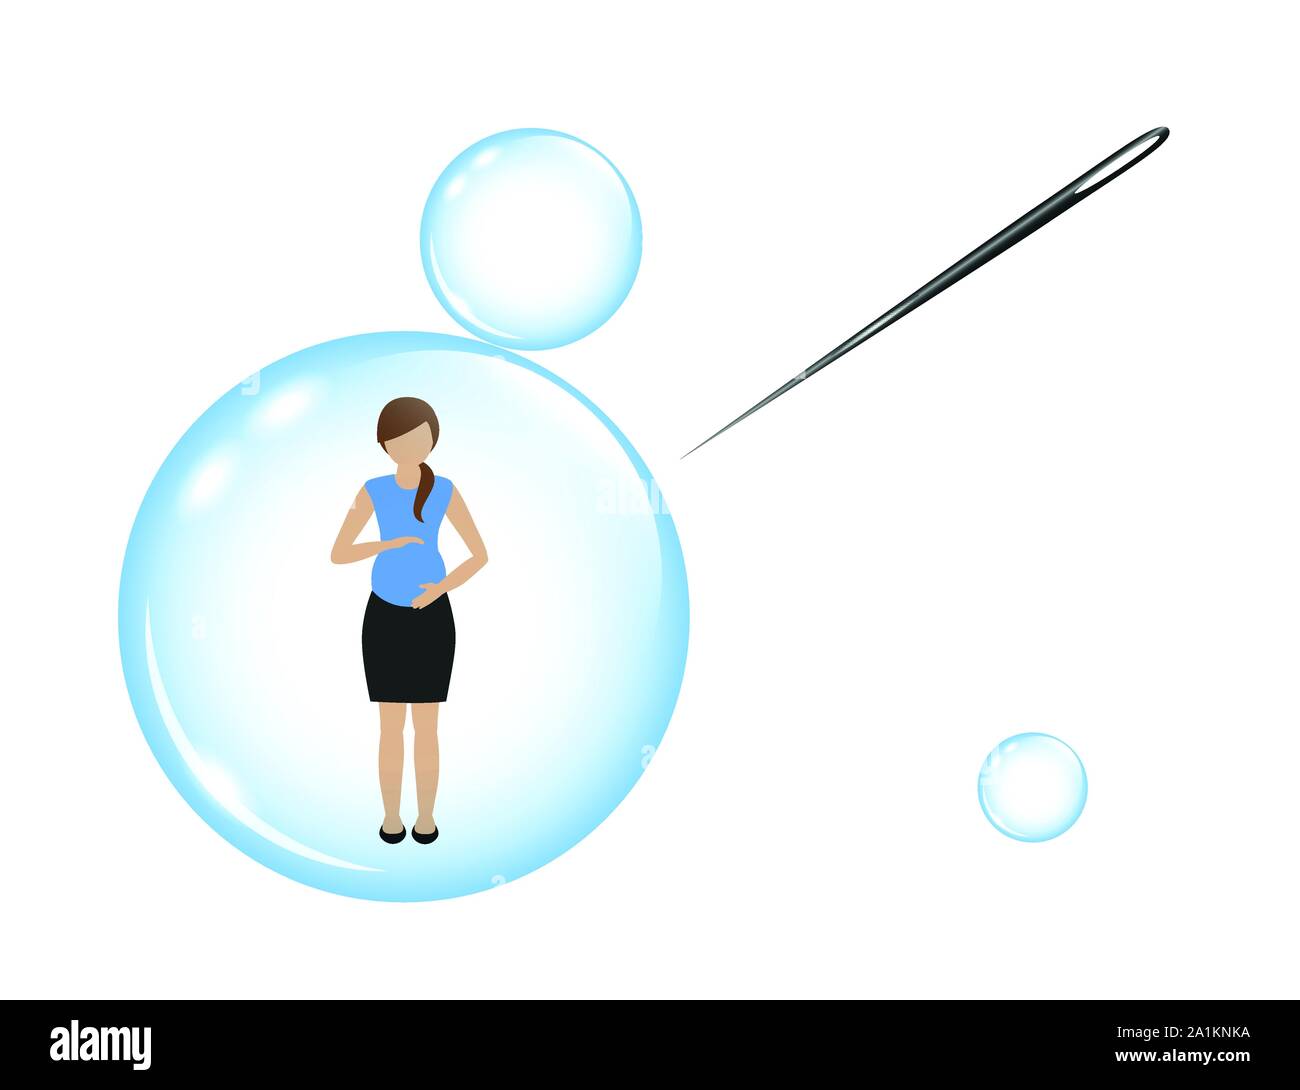 Schwangere Frau in einer Seifenblase und eine Nadel Vektor-illustration EPS 10. Stock Vektor